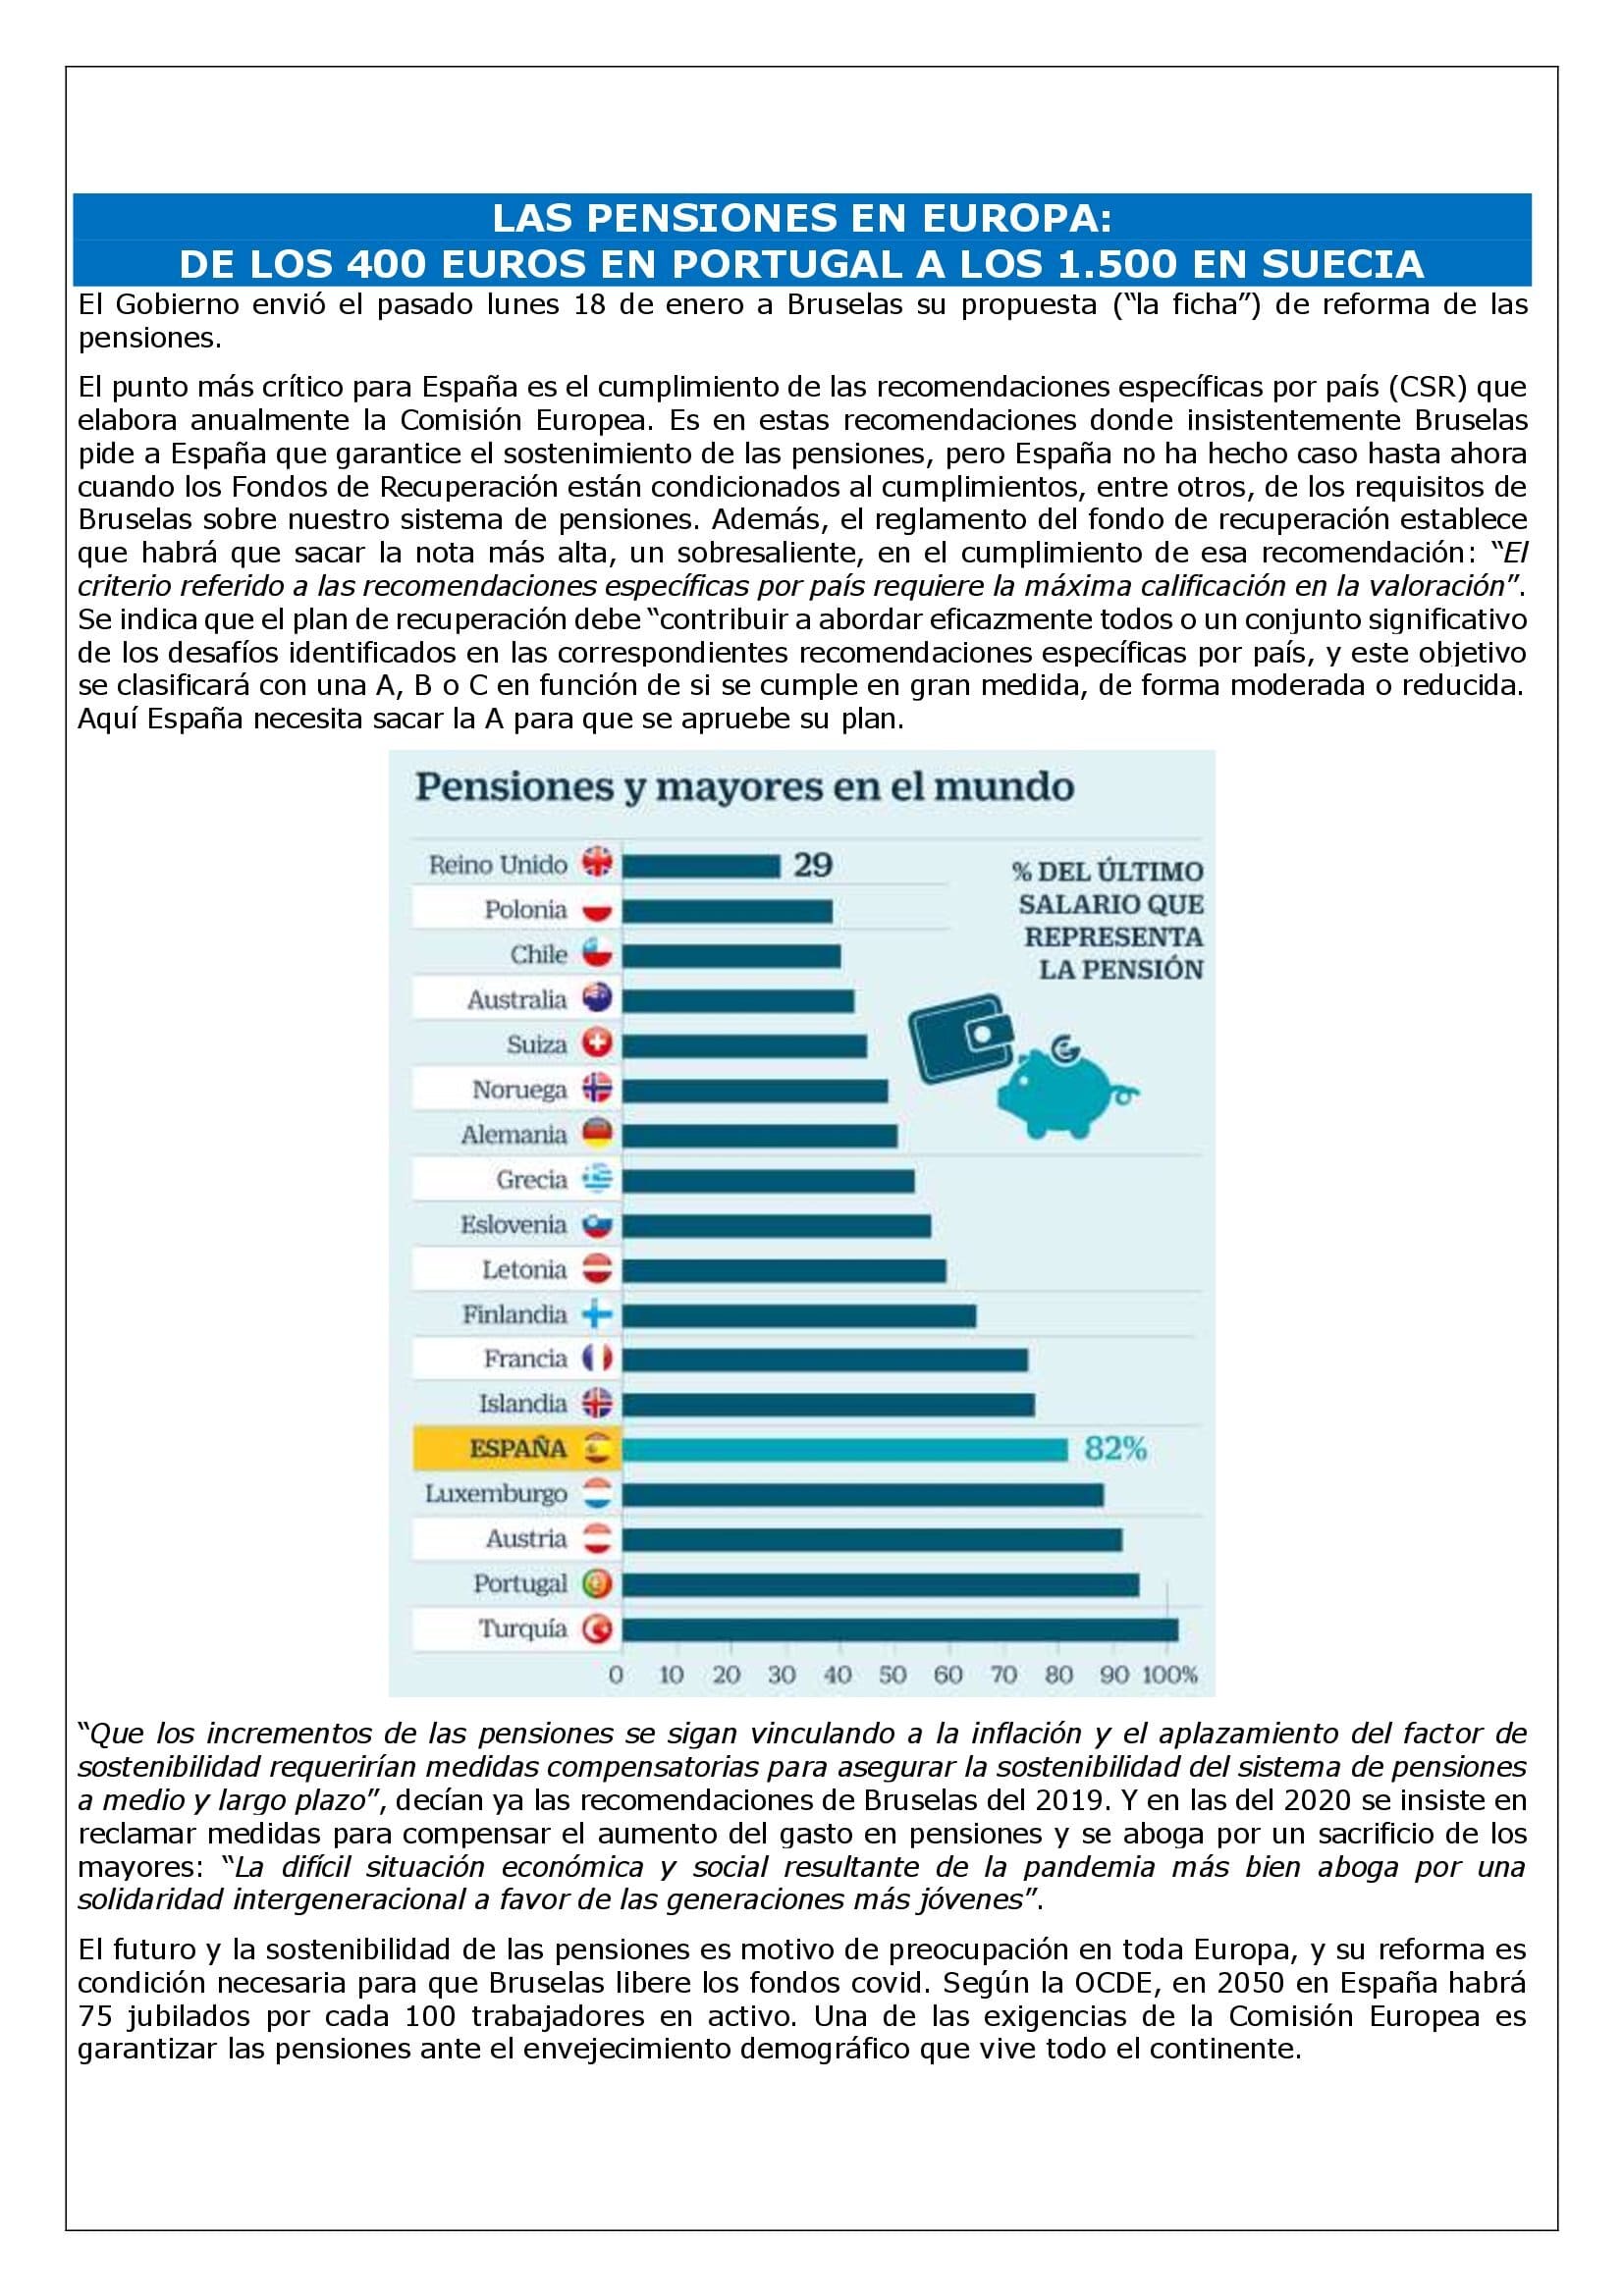 LAS PENSIONES EN EUROPA: DE LOS EUROS EN PORTUGAL 1.500 EN SUECIA - Laboral